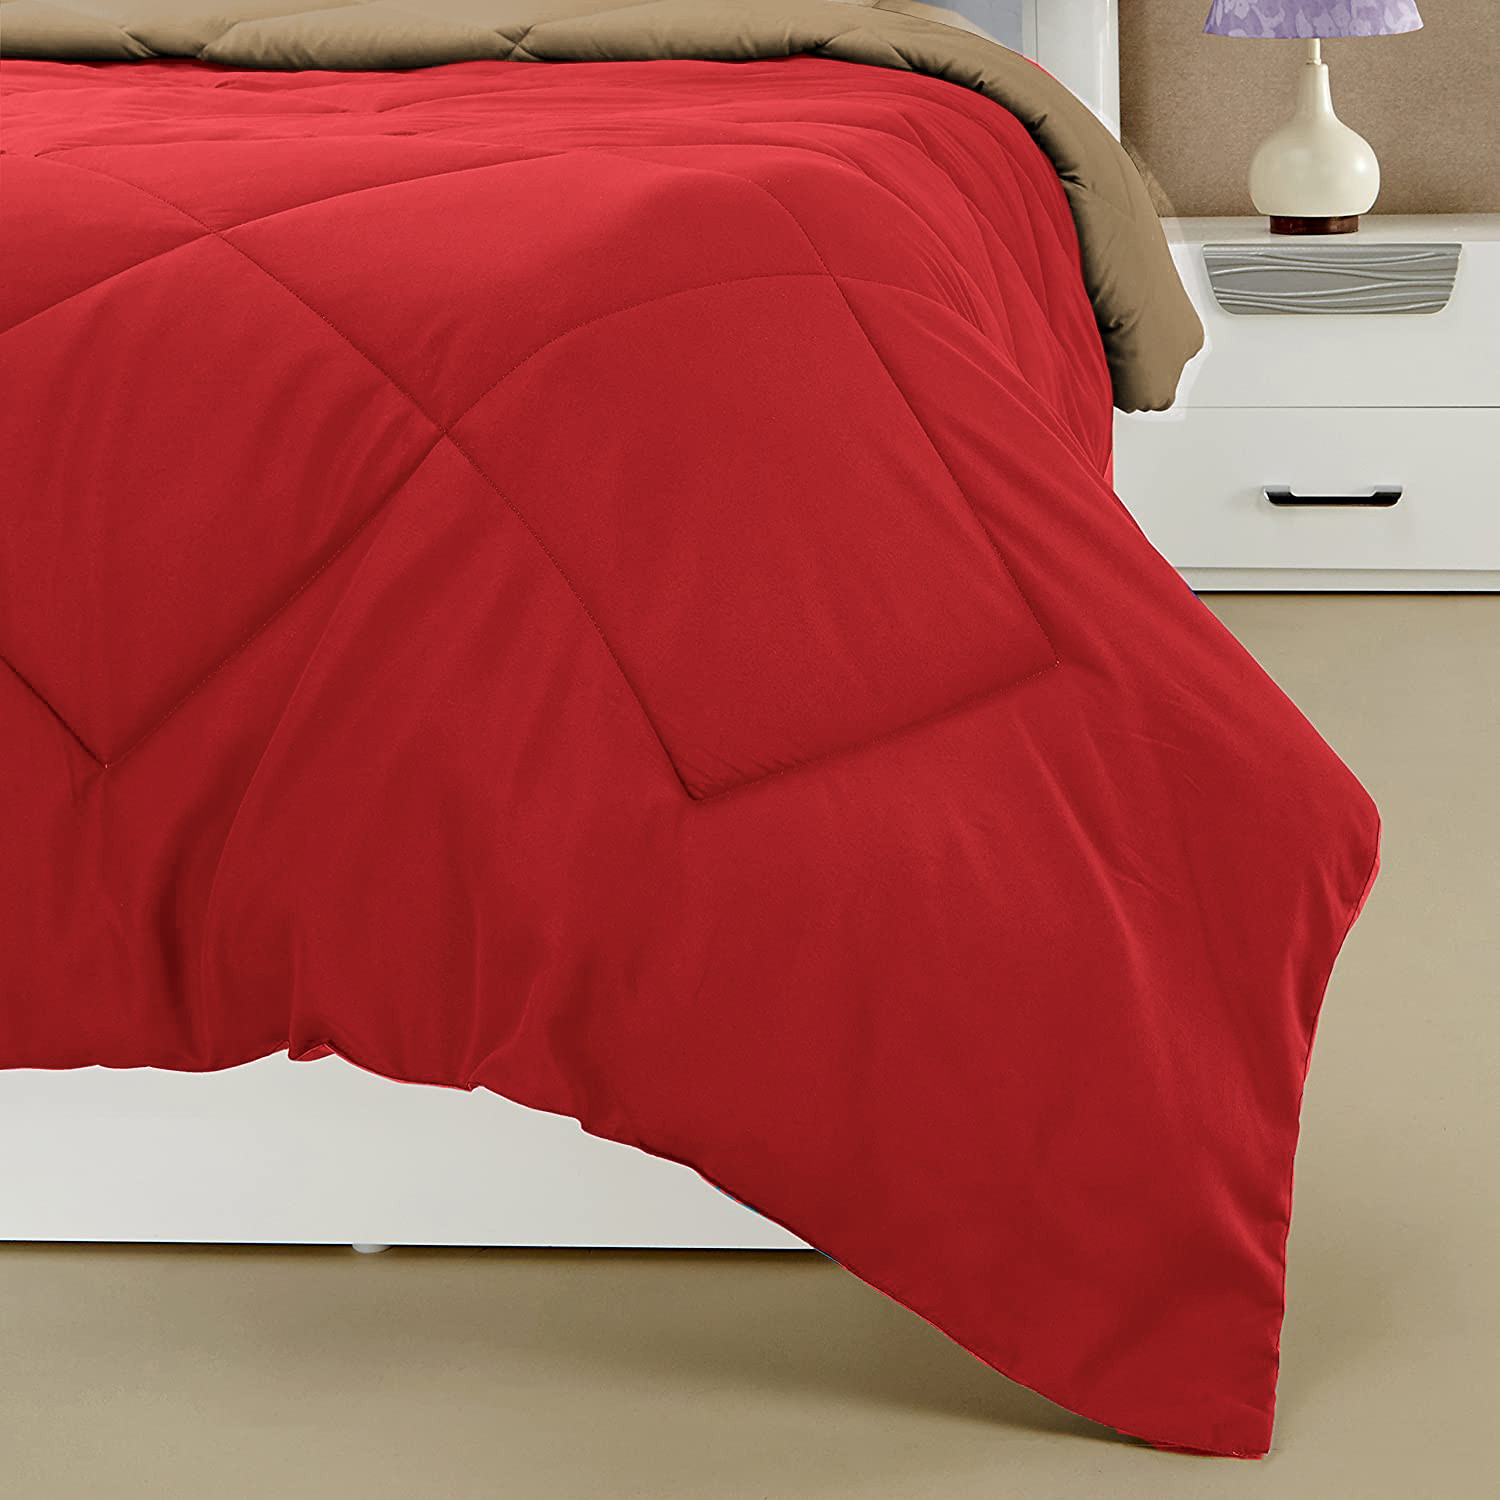 Kuber Industries Comforter for Double Bed|Microfiber Winter Comforter for Double Bed|220 GSM Reversible Comforter|AC Quilt|Dohar|Blanket |Pink & Beige